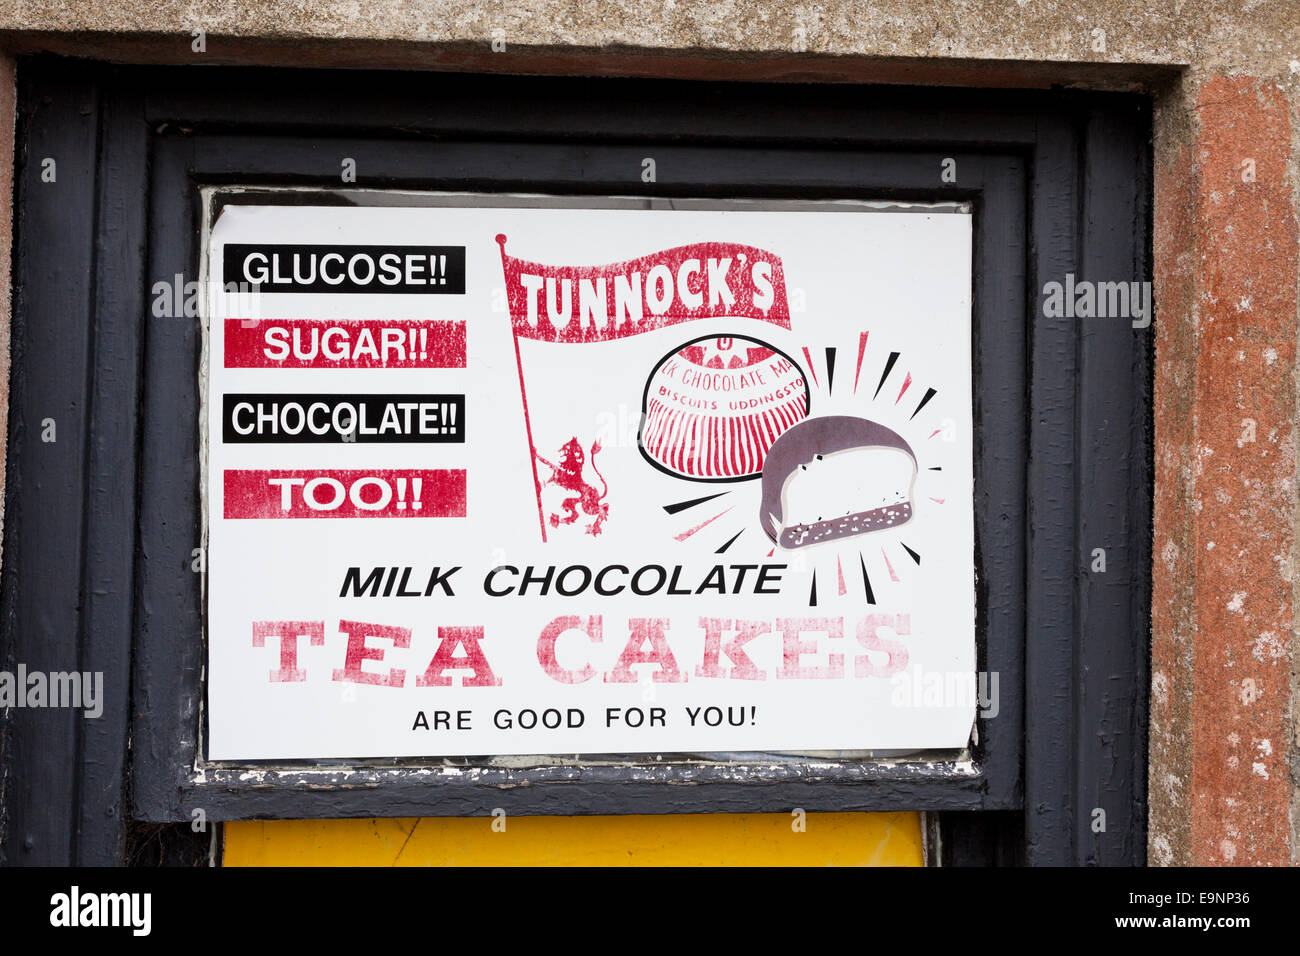 Alte Werbung für Tunnocks-Tee-Kuchen bei Crinan, Knapdale, Argyll & Bute, Scotland UK Stockfoto